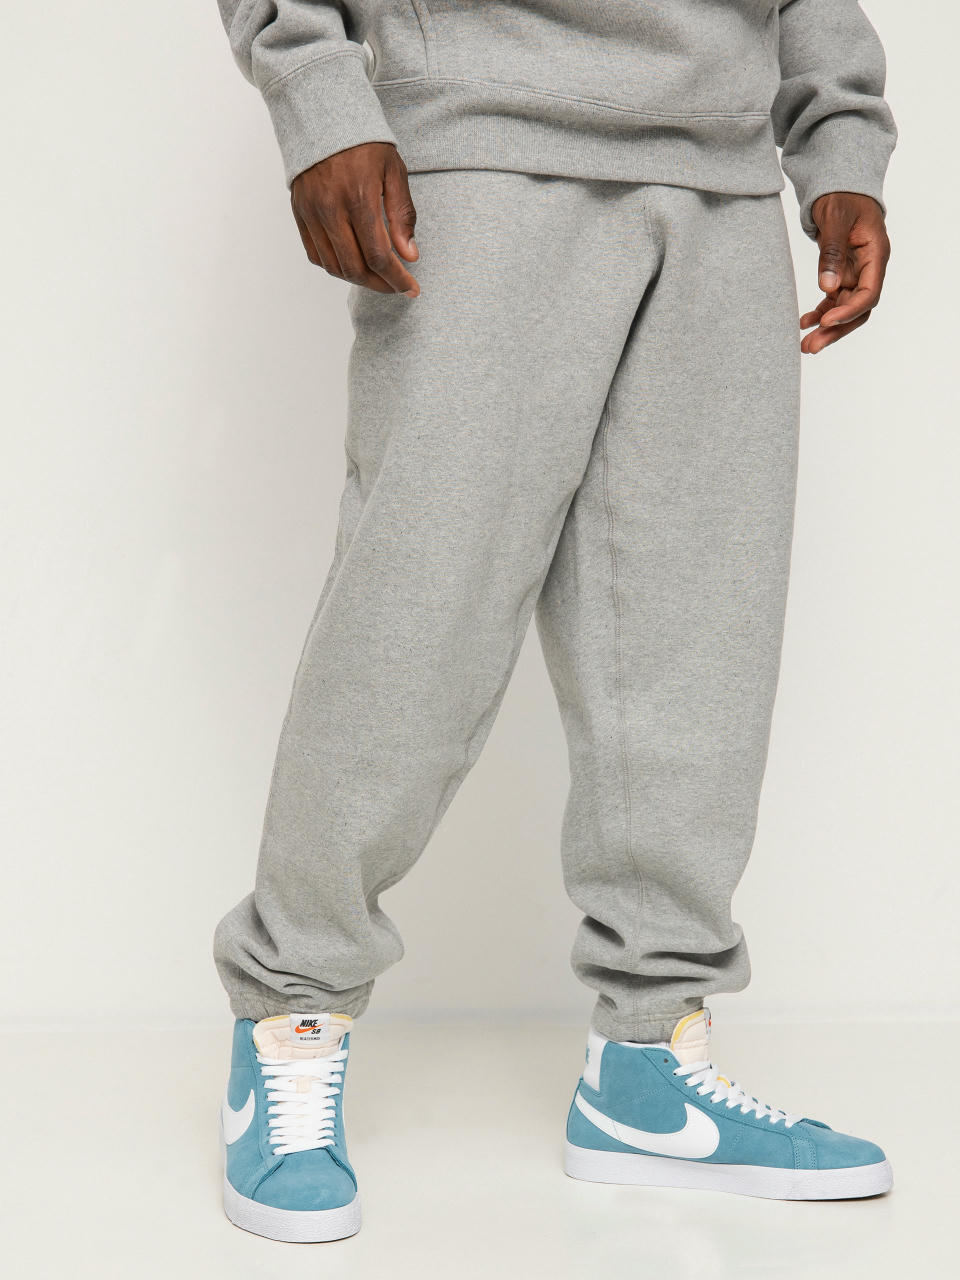 Scheermes Nutteloos identificatie Nike SB Nikelab Pants (dk grey heather/white)